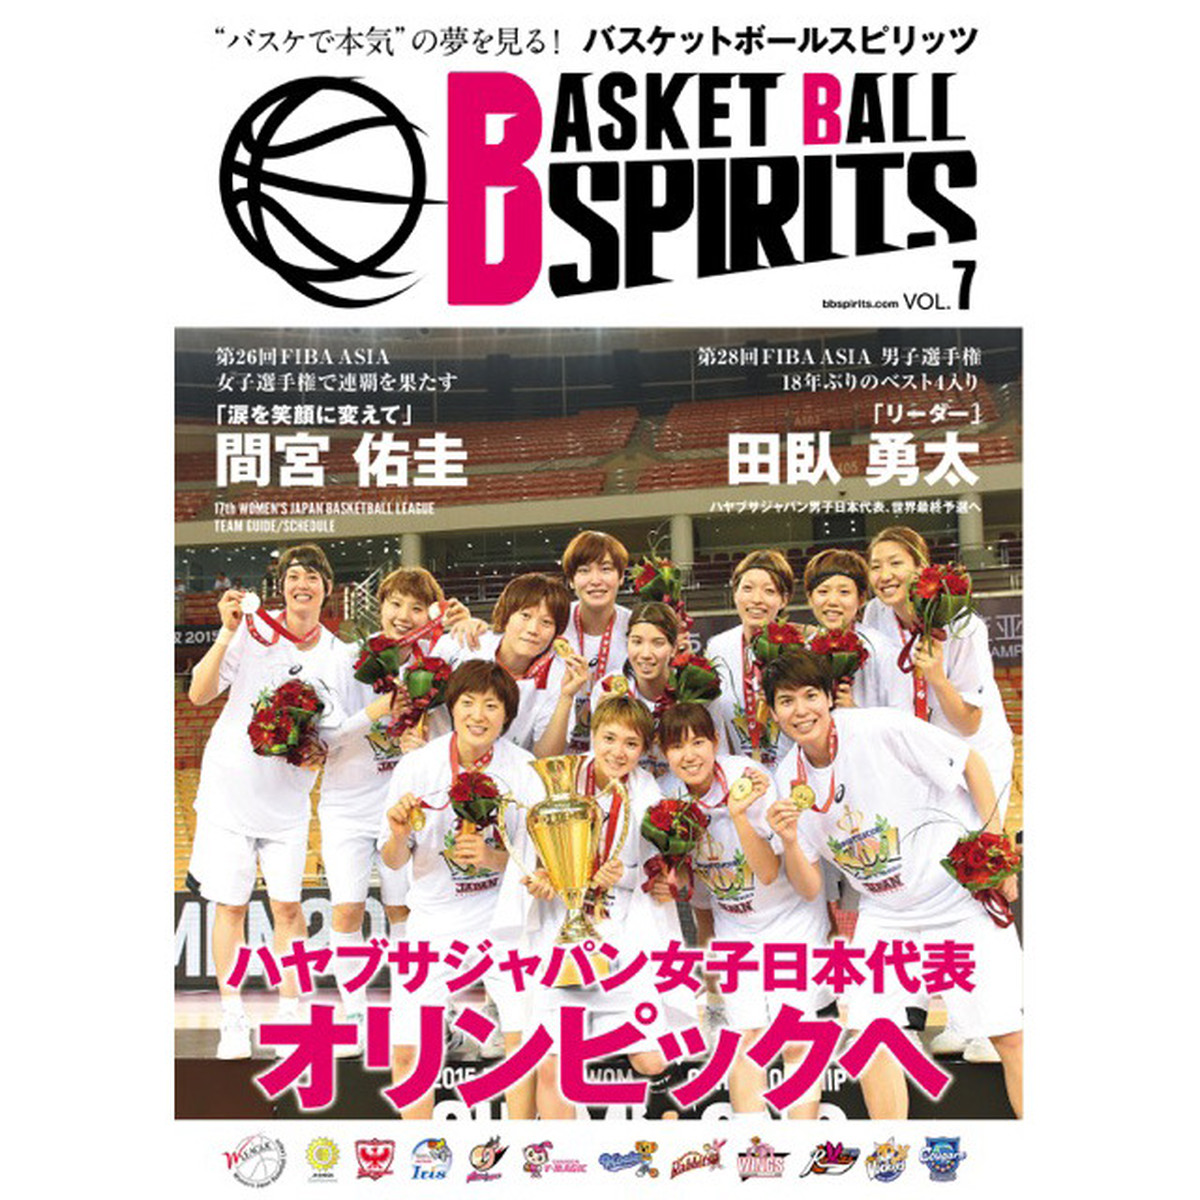 バスケットボールスピリッツ Vol 7 雑誌バックナンバー spiritsオンラインショップ